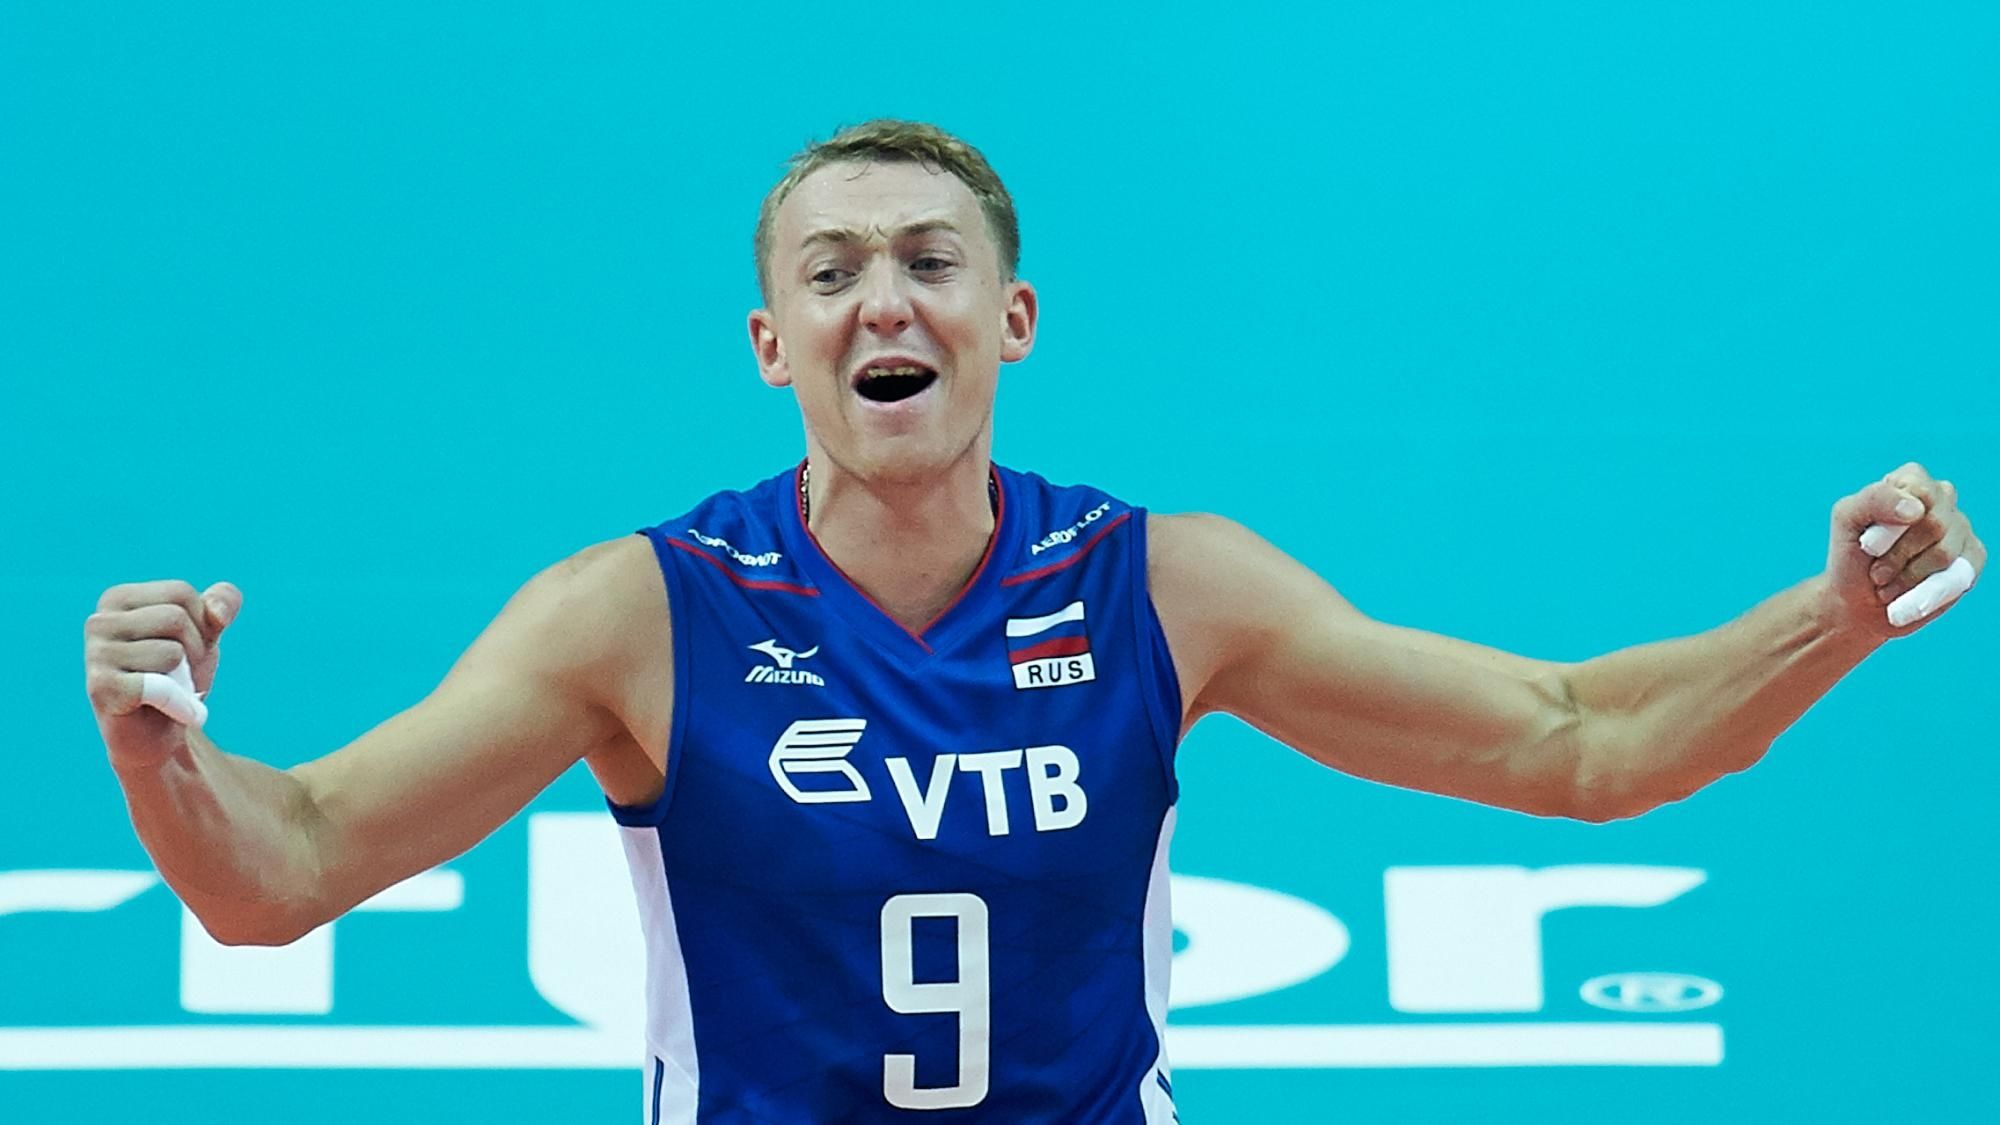 Волейболист Спиридонов объявил о планах вернуться в свой катарский клуб